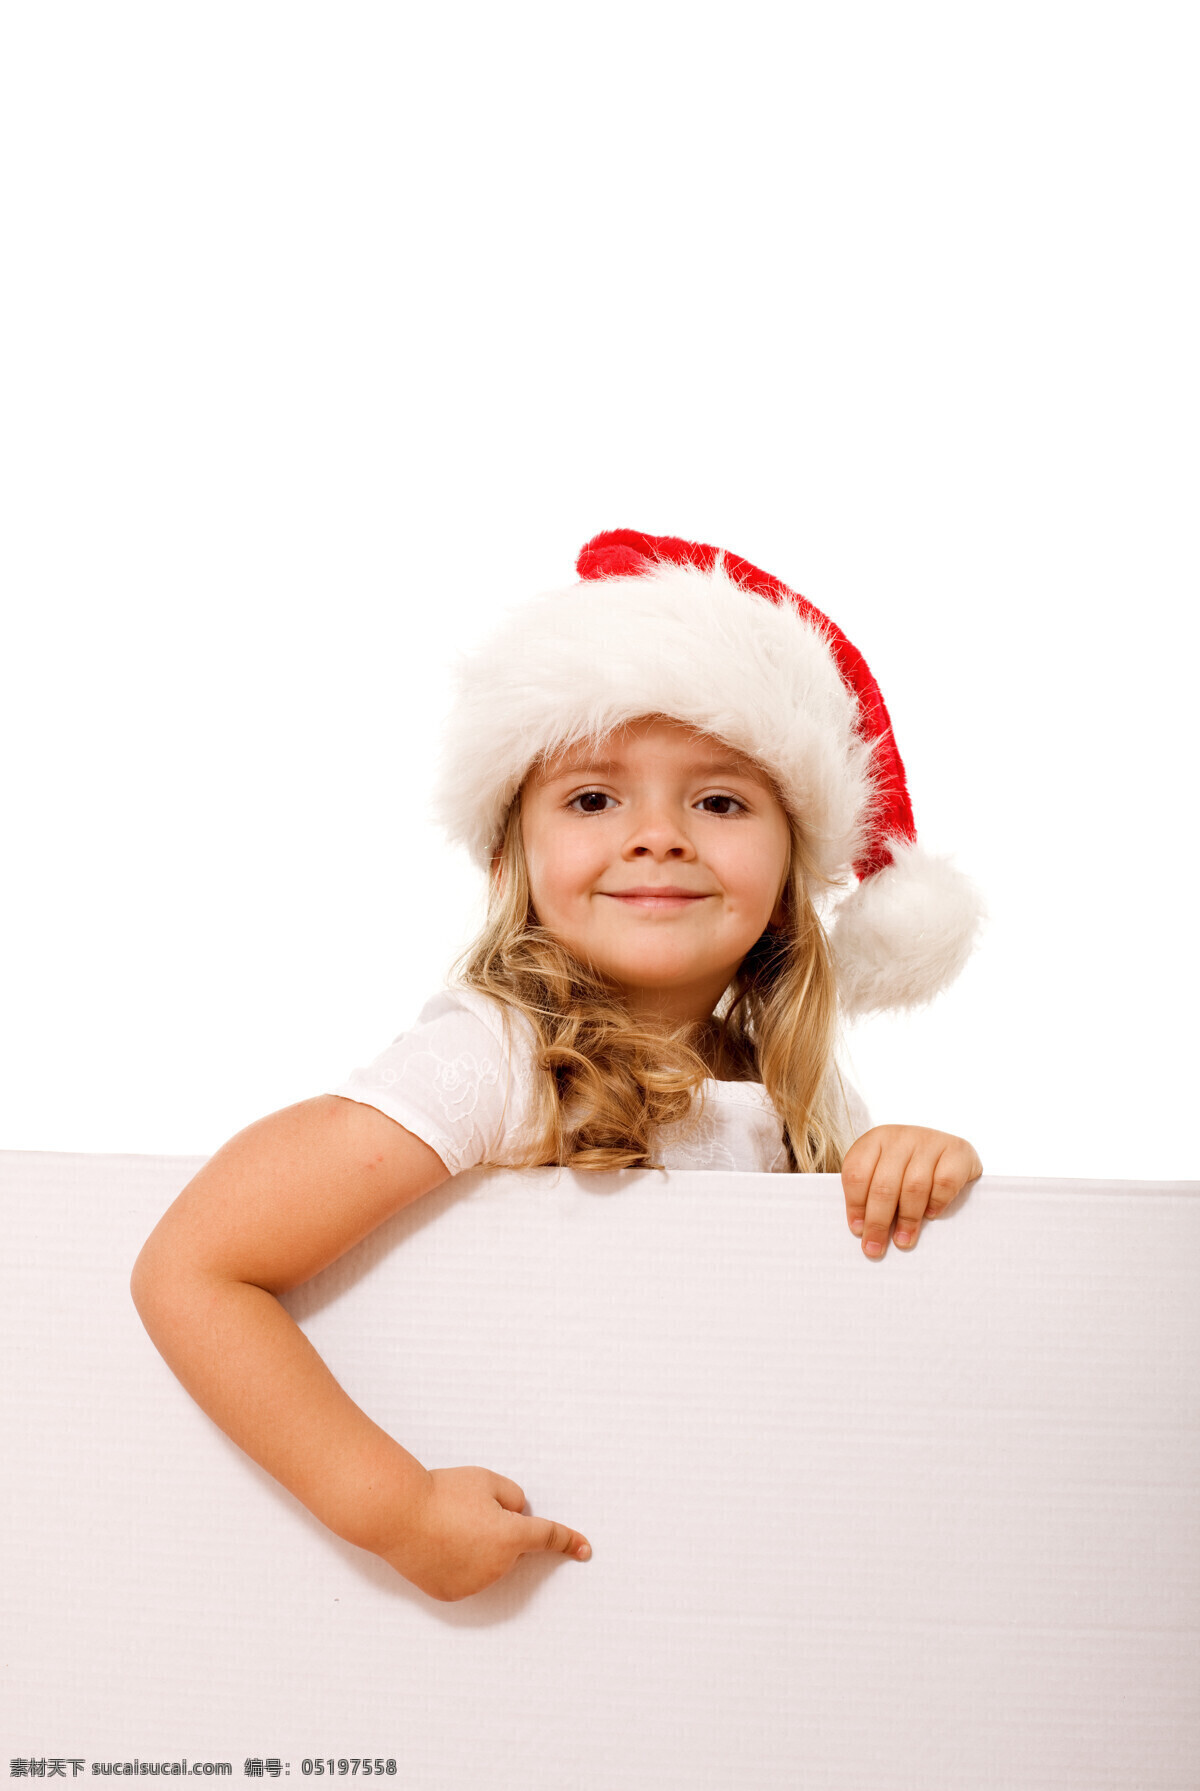 孩子 节日 节日庆祝 可爱 漂亮 庆祝 圣诞 扶 空白 广告牌 带 帽 小女孩 新年 小学生 圣诞摄影 文化艺术 矢量图